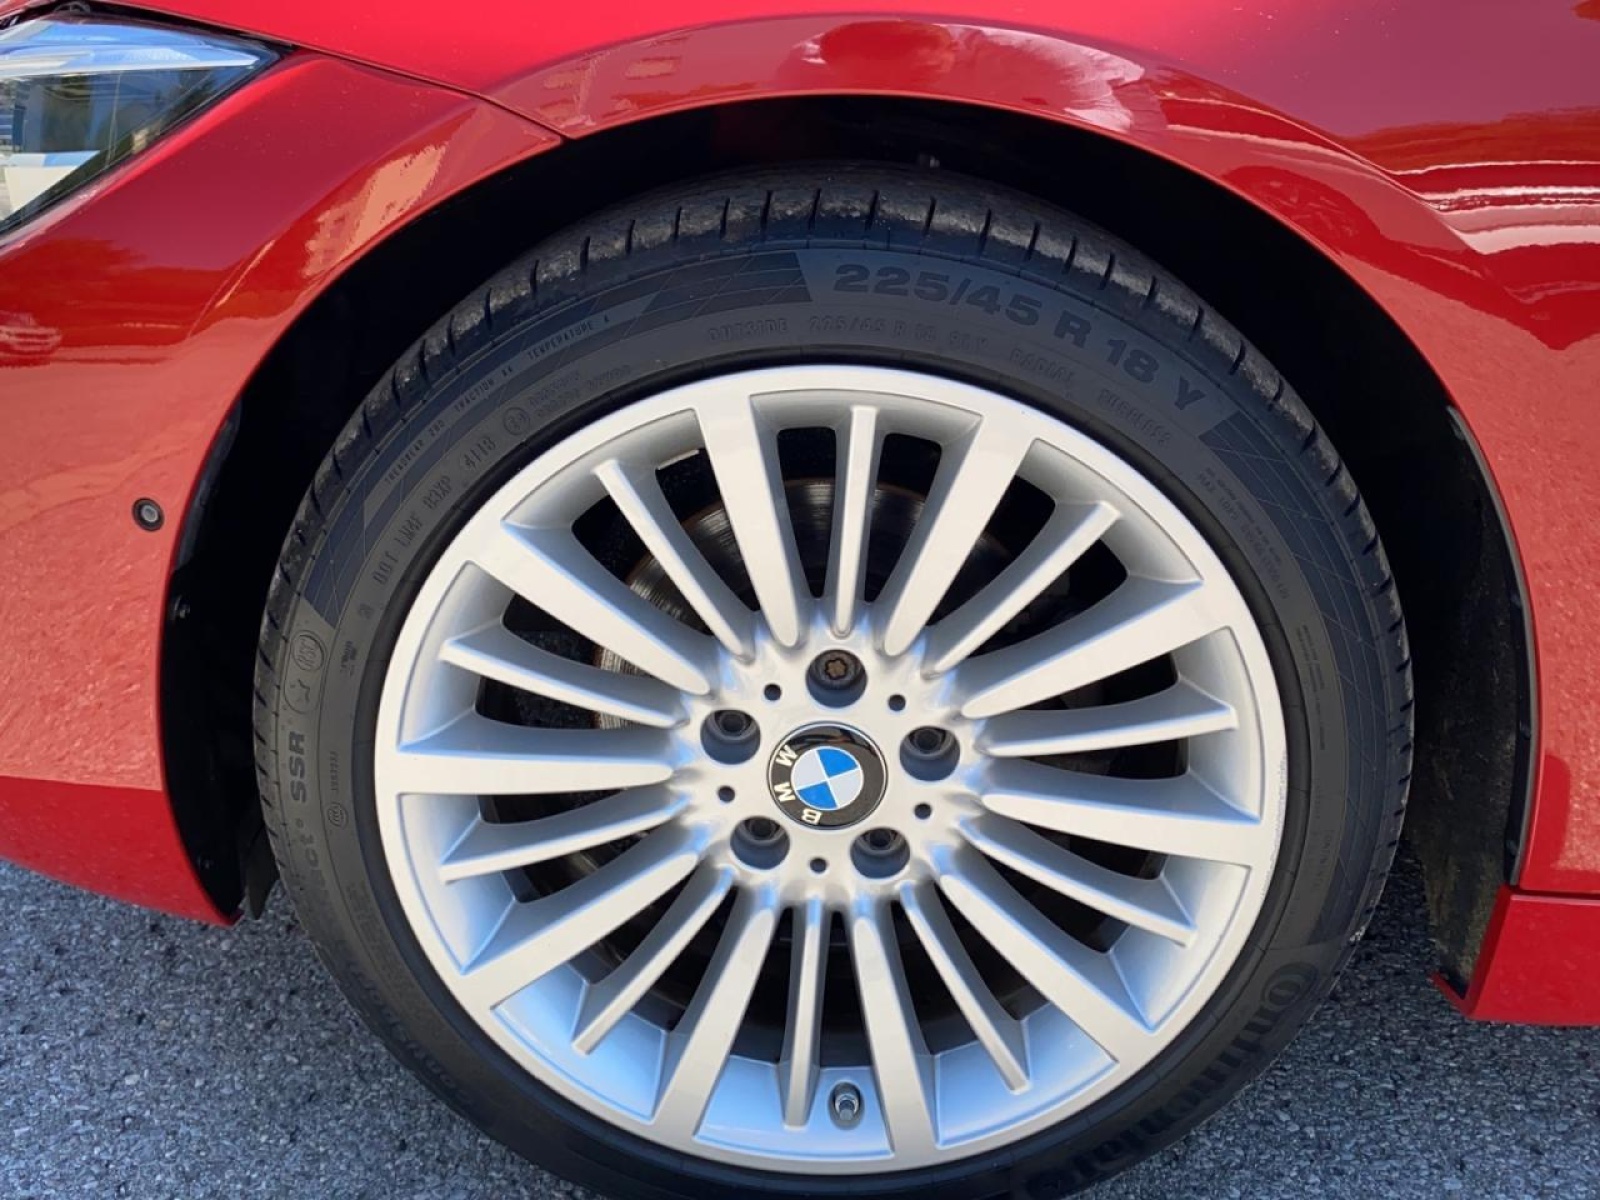 BMW Coupe Gebrauchtwagen online kaufen bei instamotion